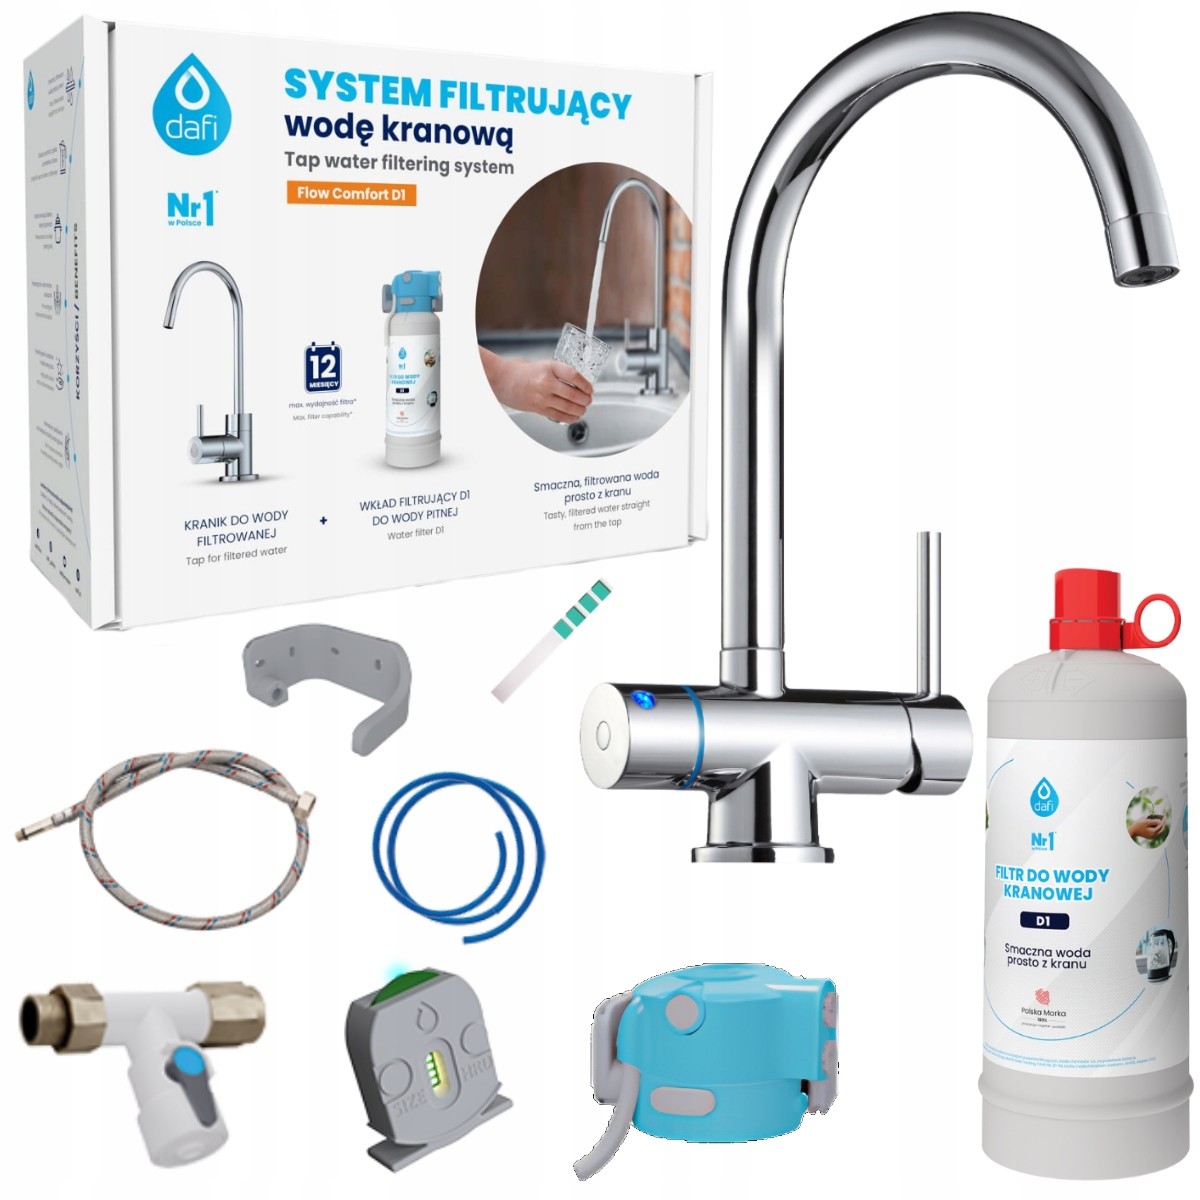 Dafi Flow Comfort systém filtrace kohoutkové vody